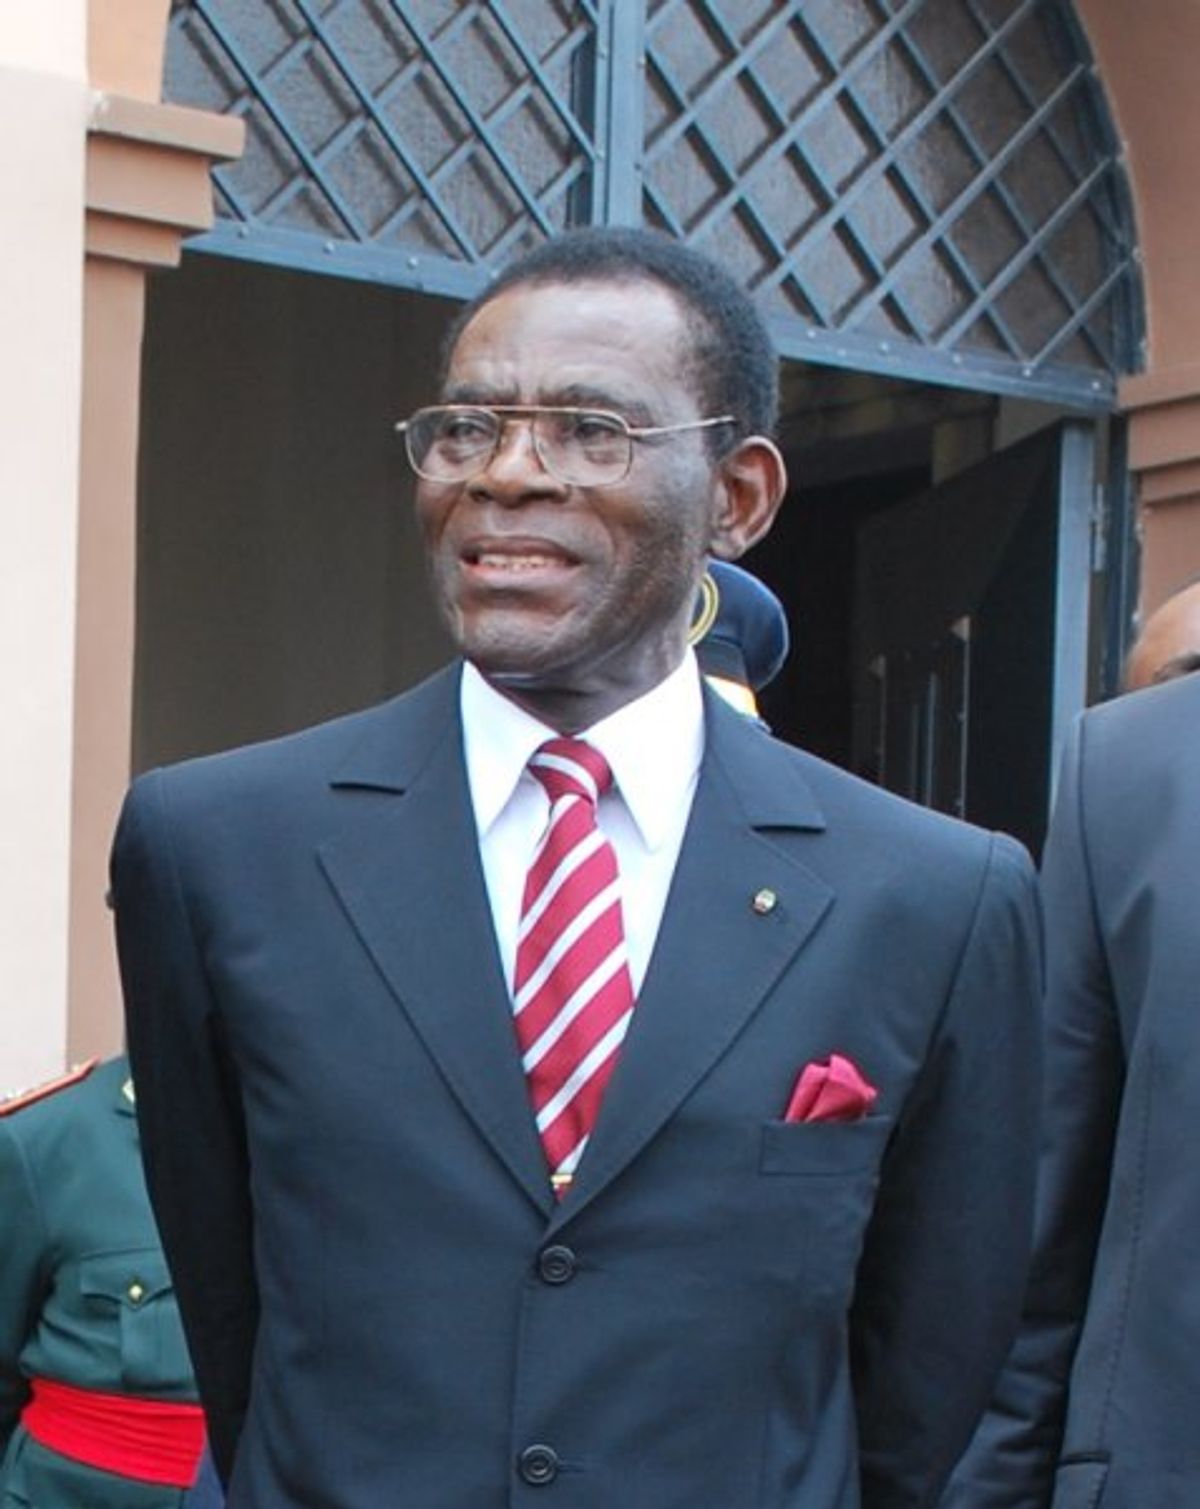 President Obiang of Equatorial Guinea